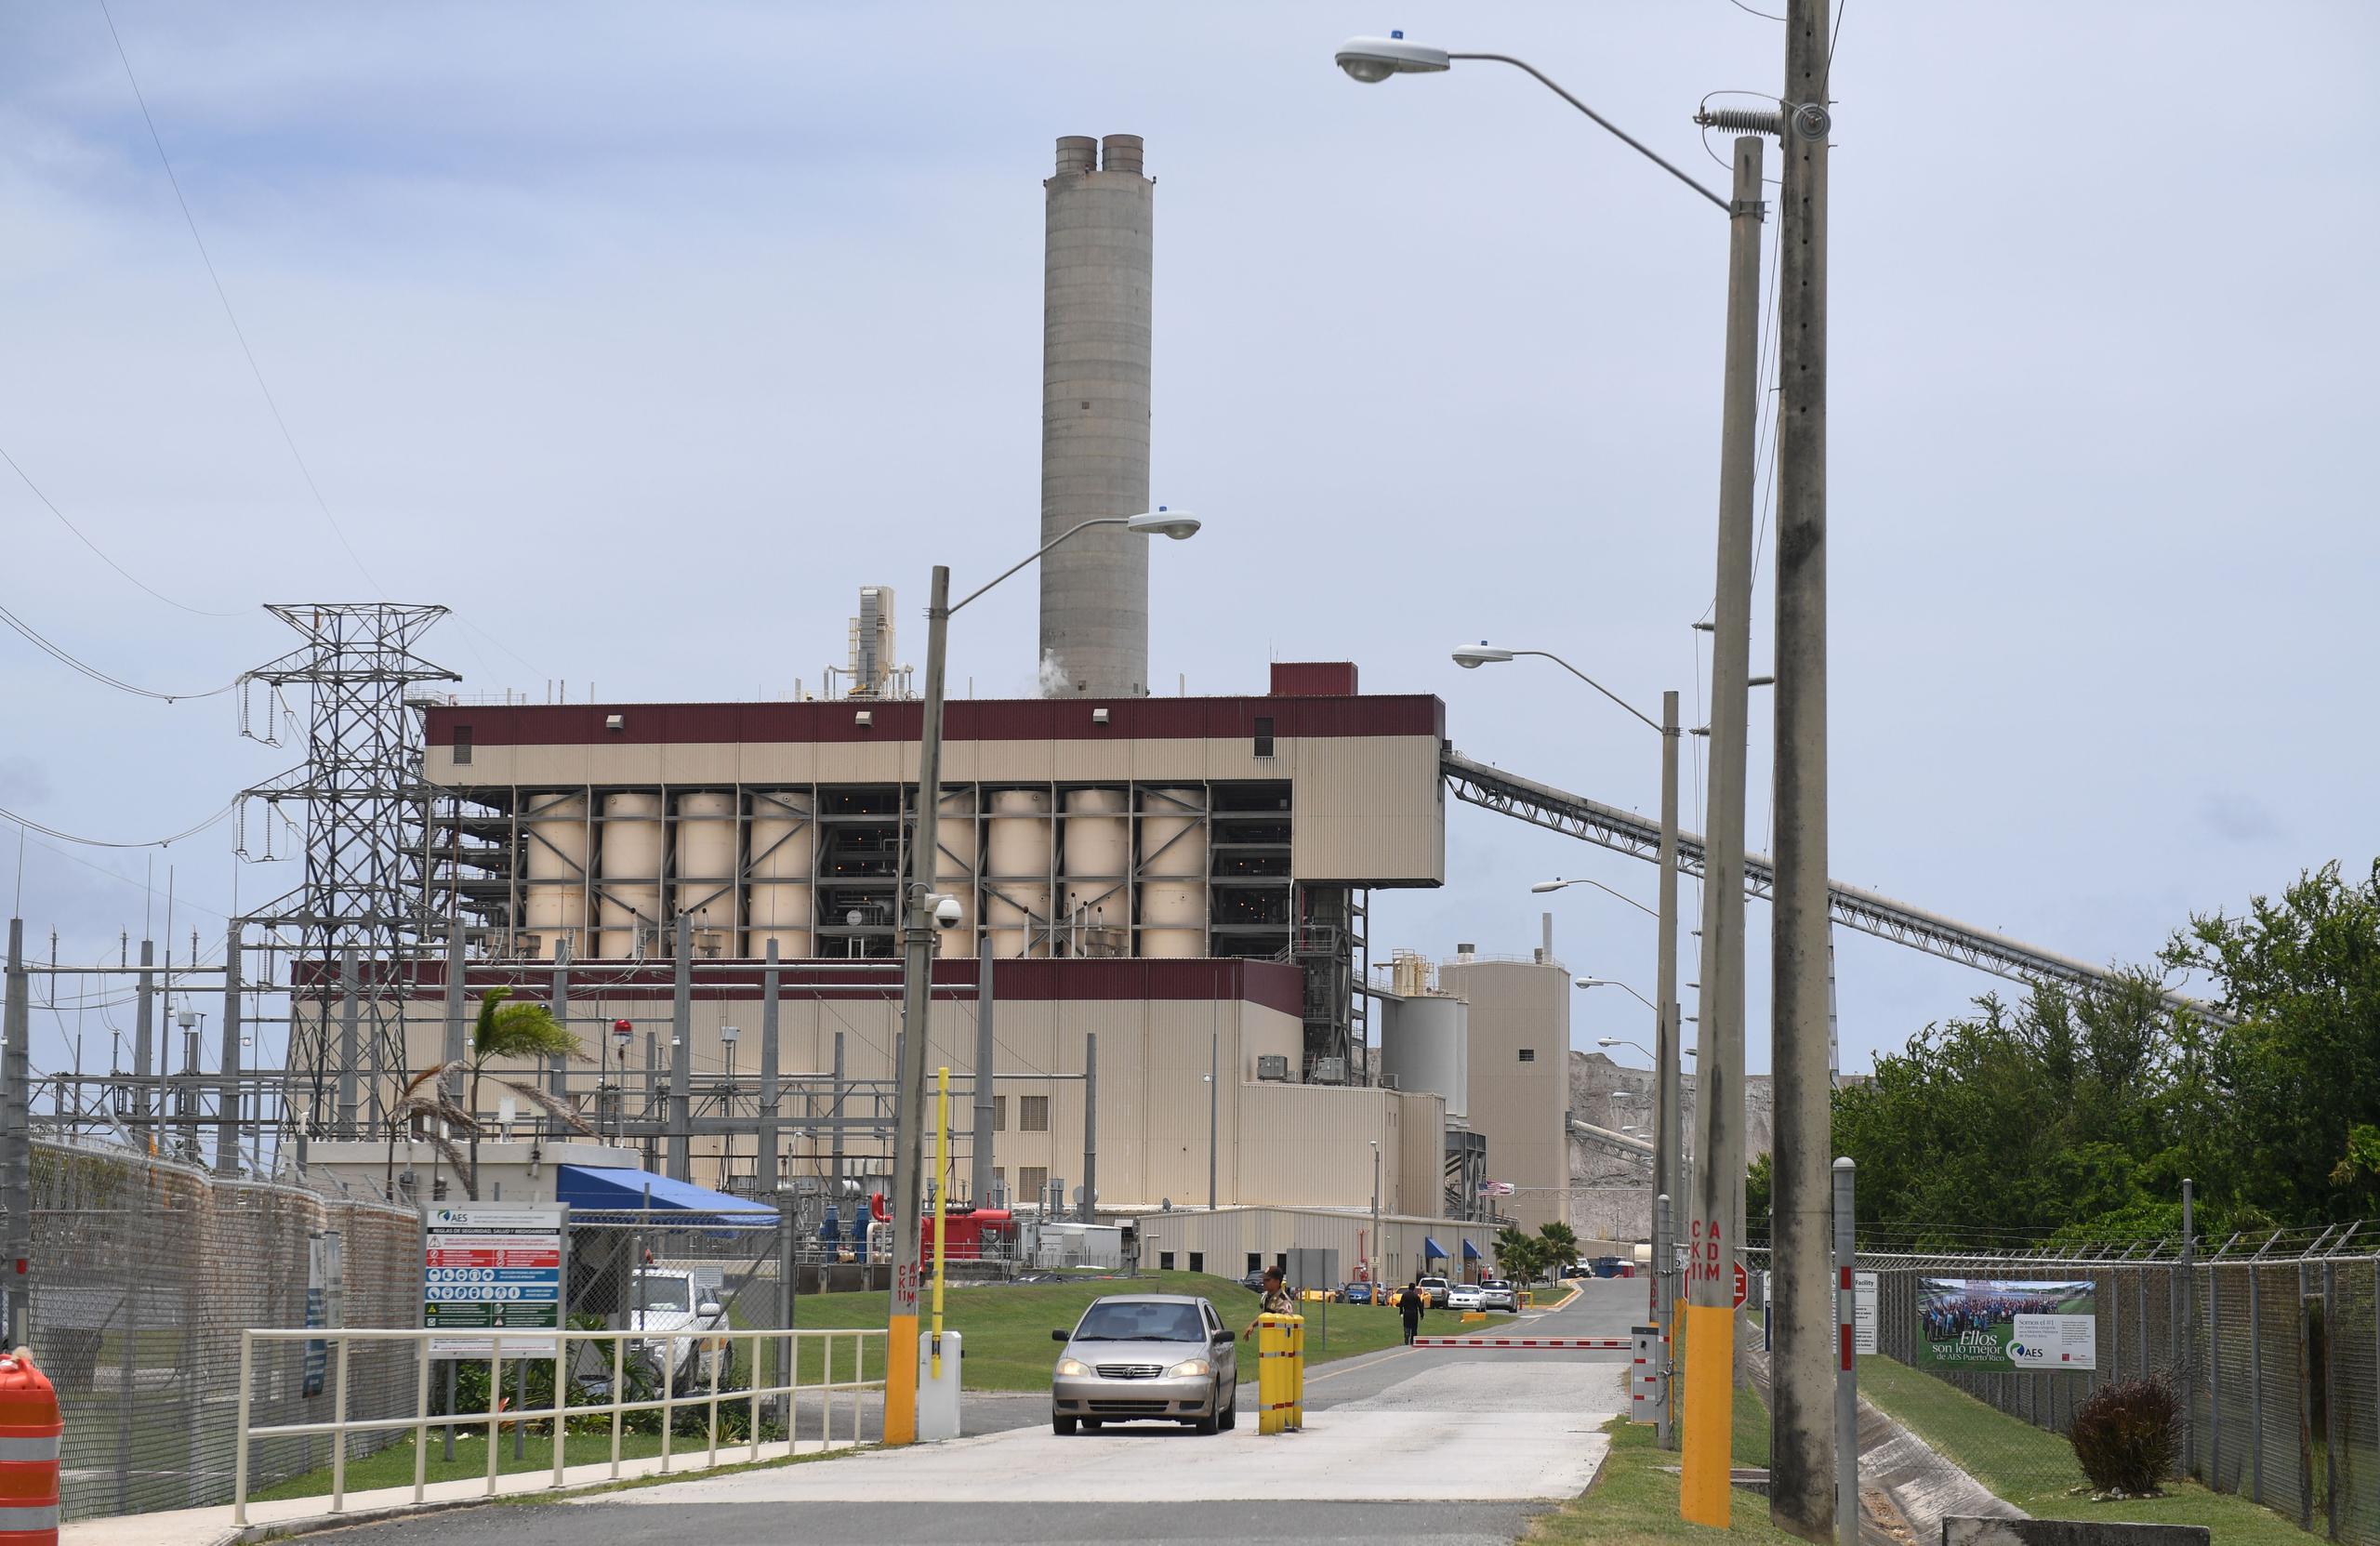 Según el Negociado de Energía, AES alega que "varios cambios en el ordenamiento jurídico de Puerto Rico, aumentaron los costos de operación de la planta".